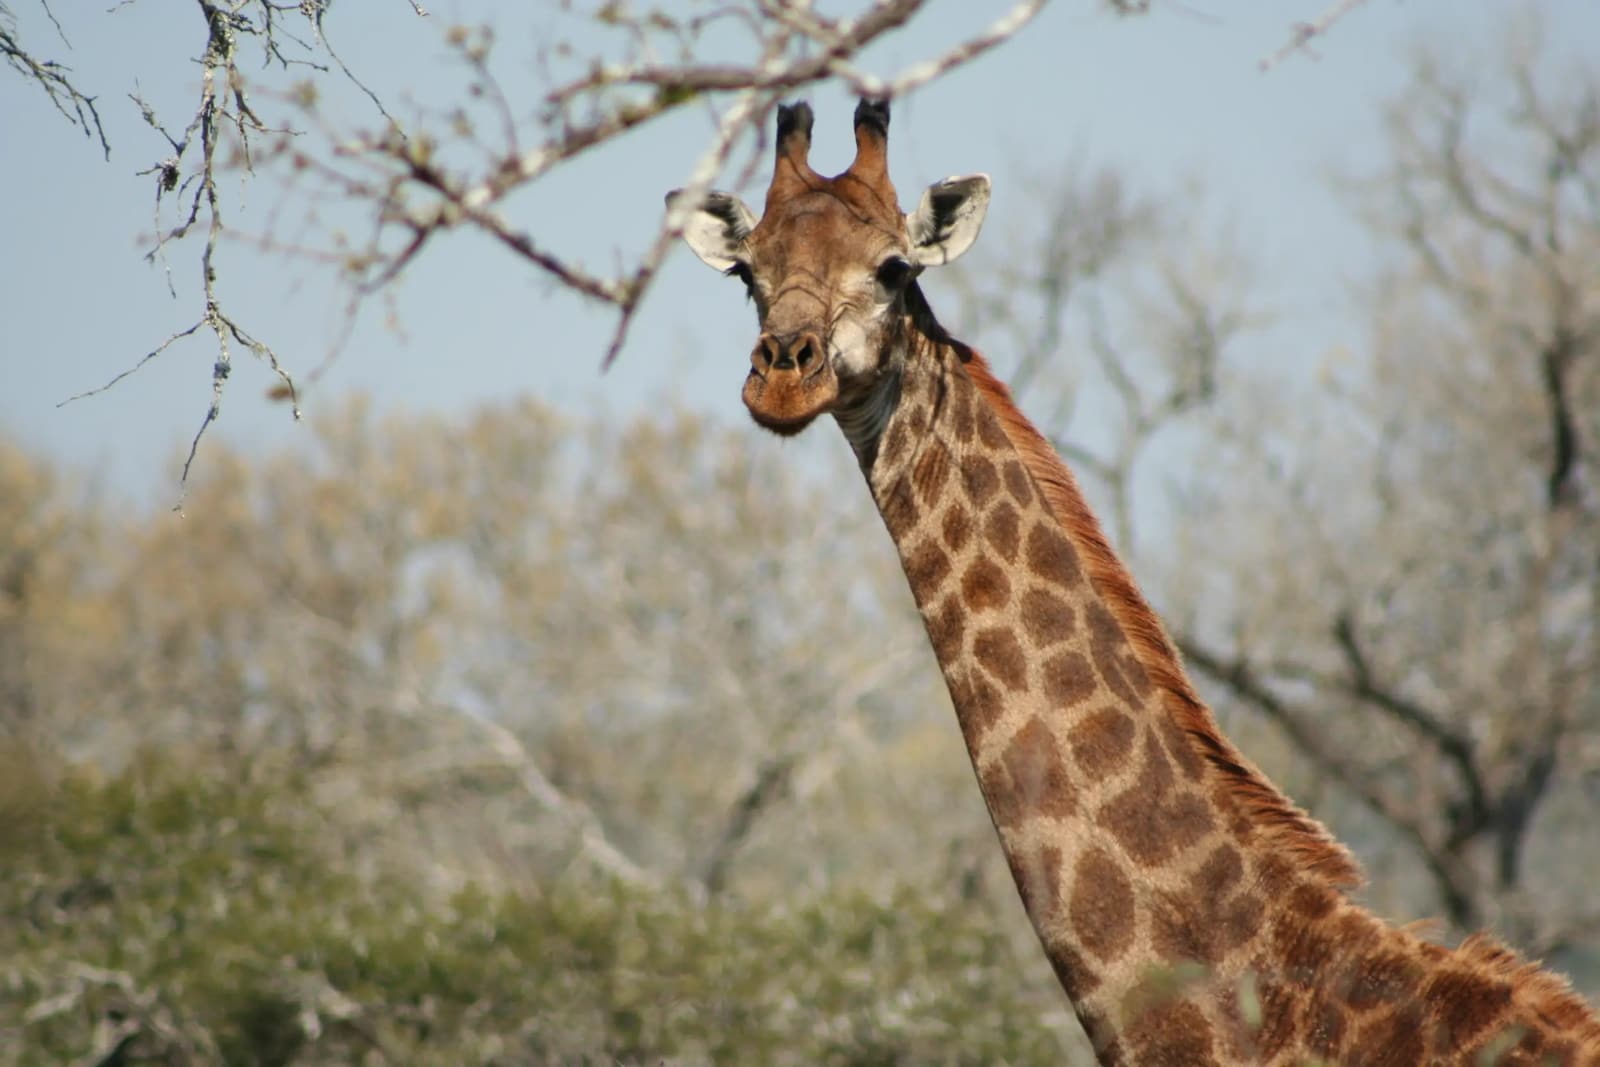 Giraffe in Eswatini